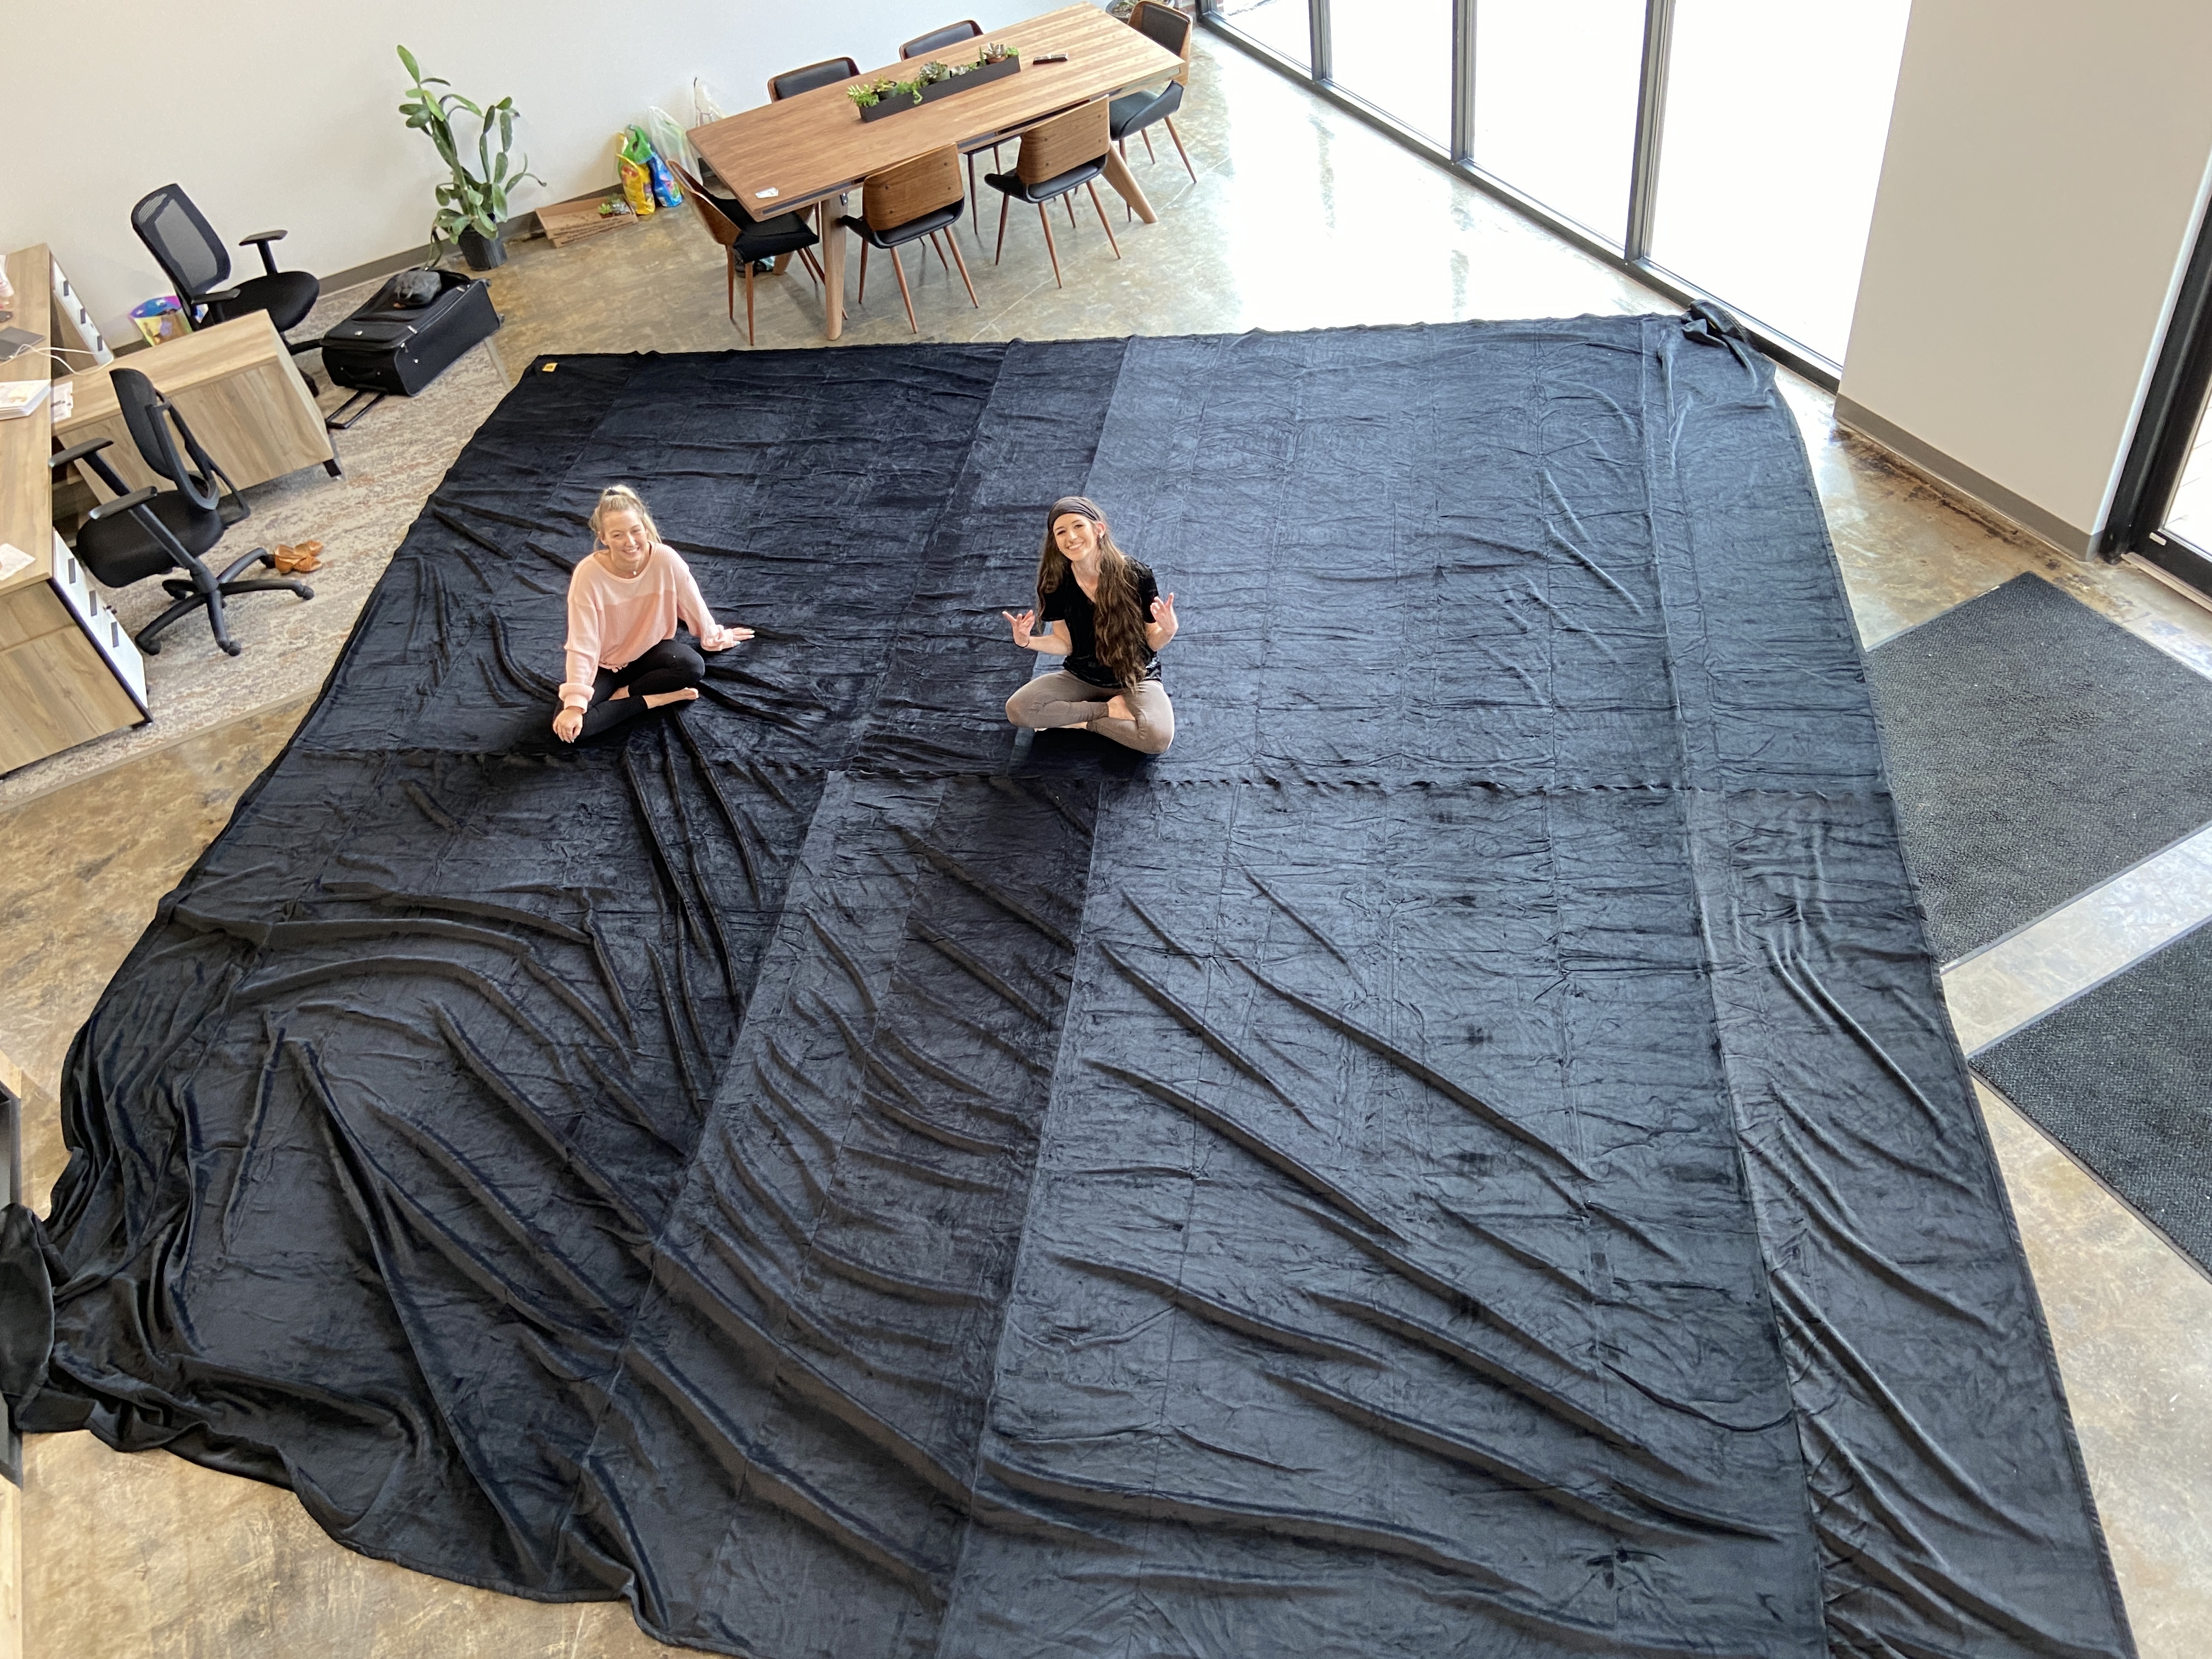 Big Blanket Co Introduces the World's Biggest Big Blanket